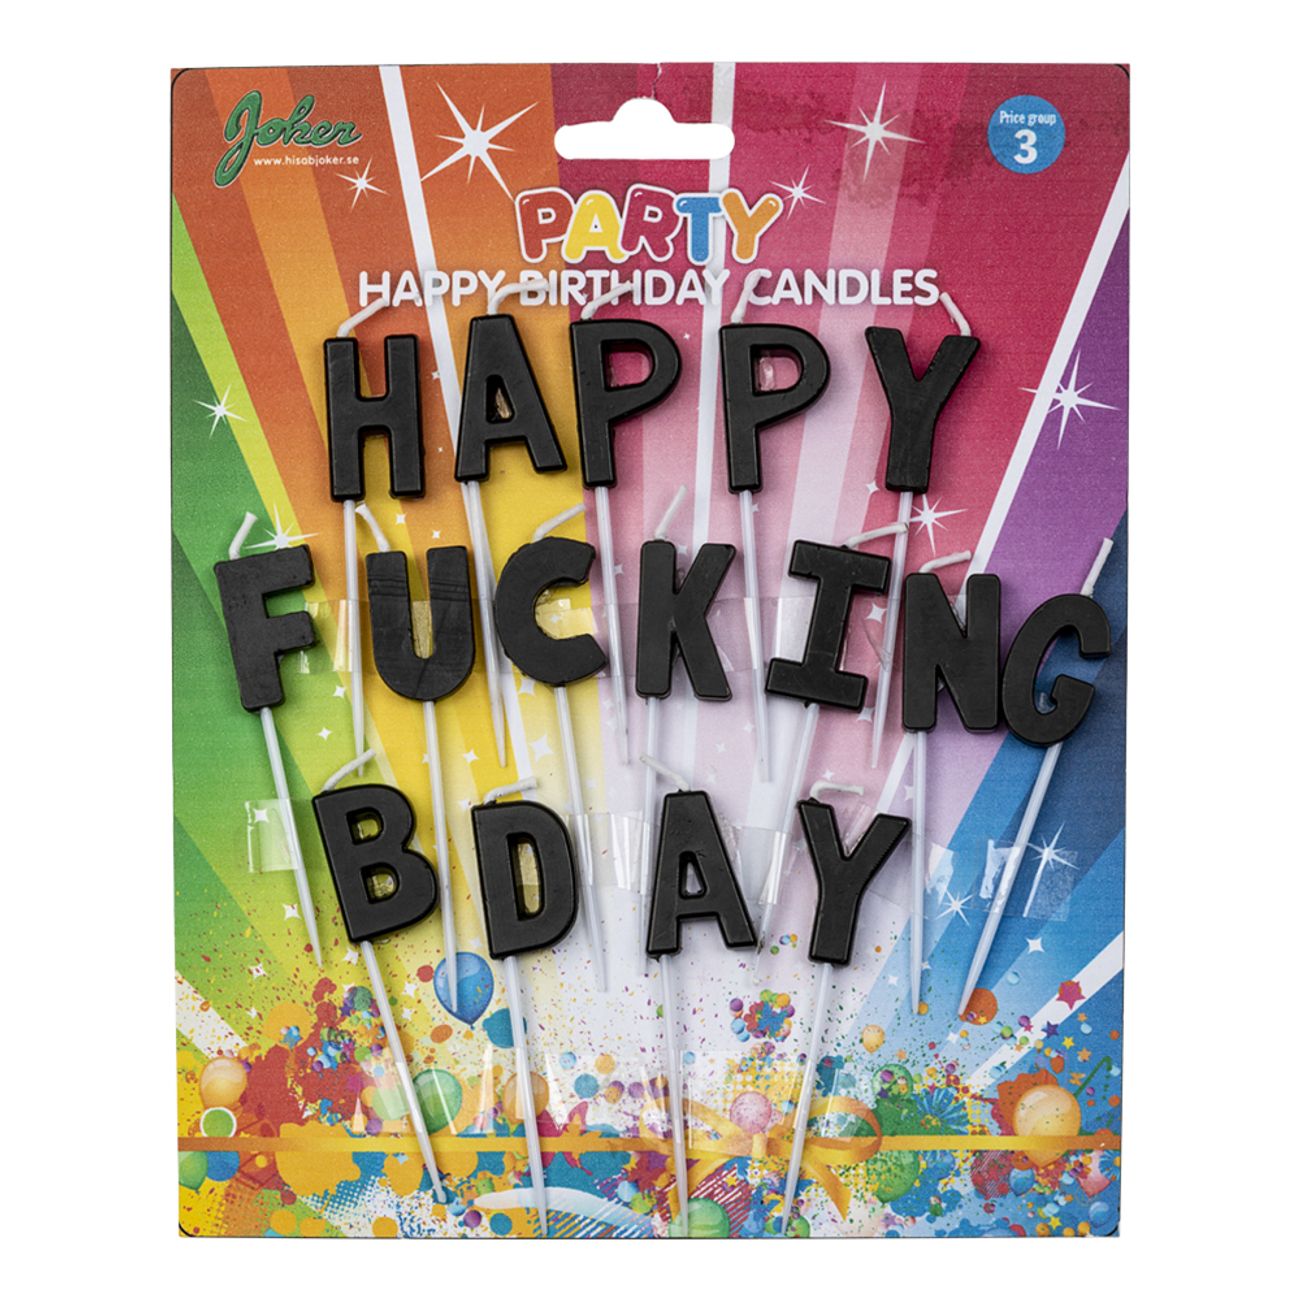 tartljus-happy-fucking-birthday-1